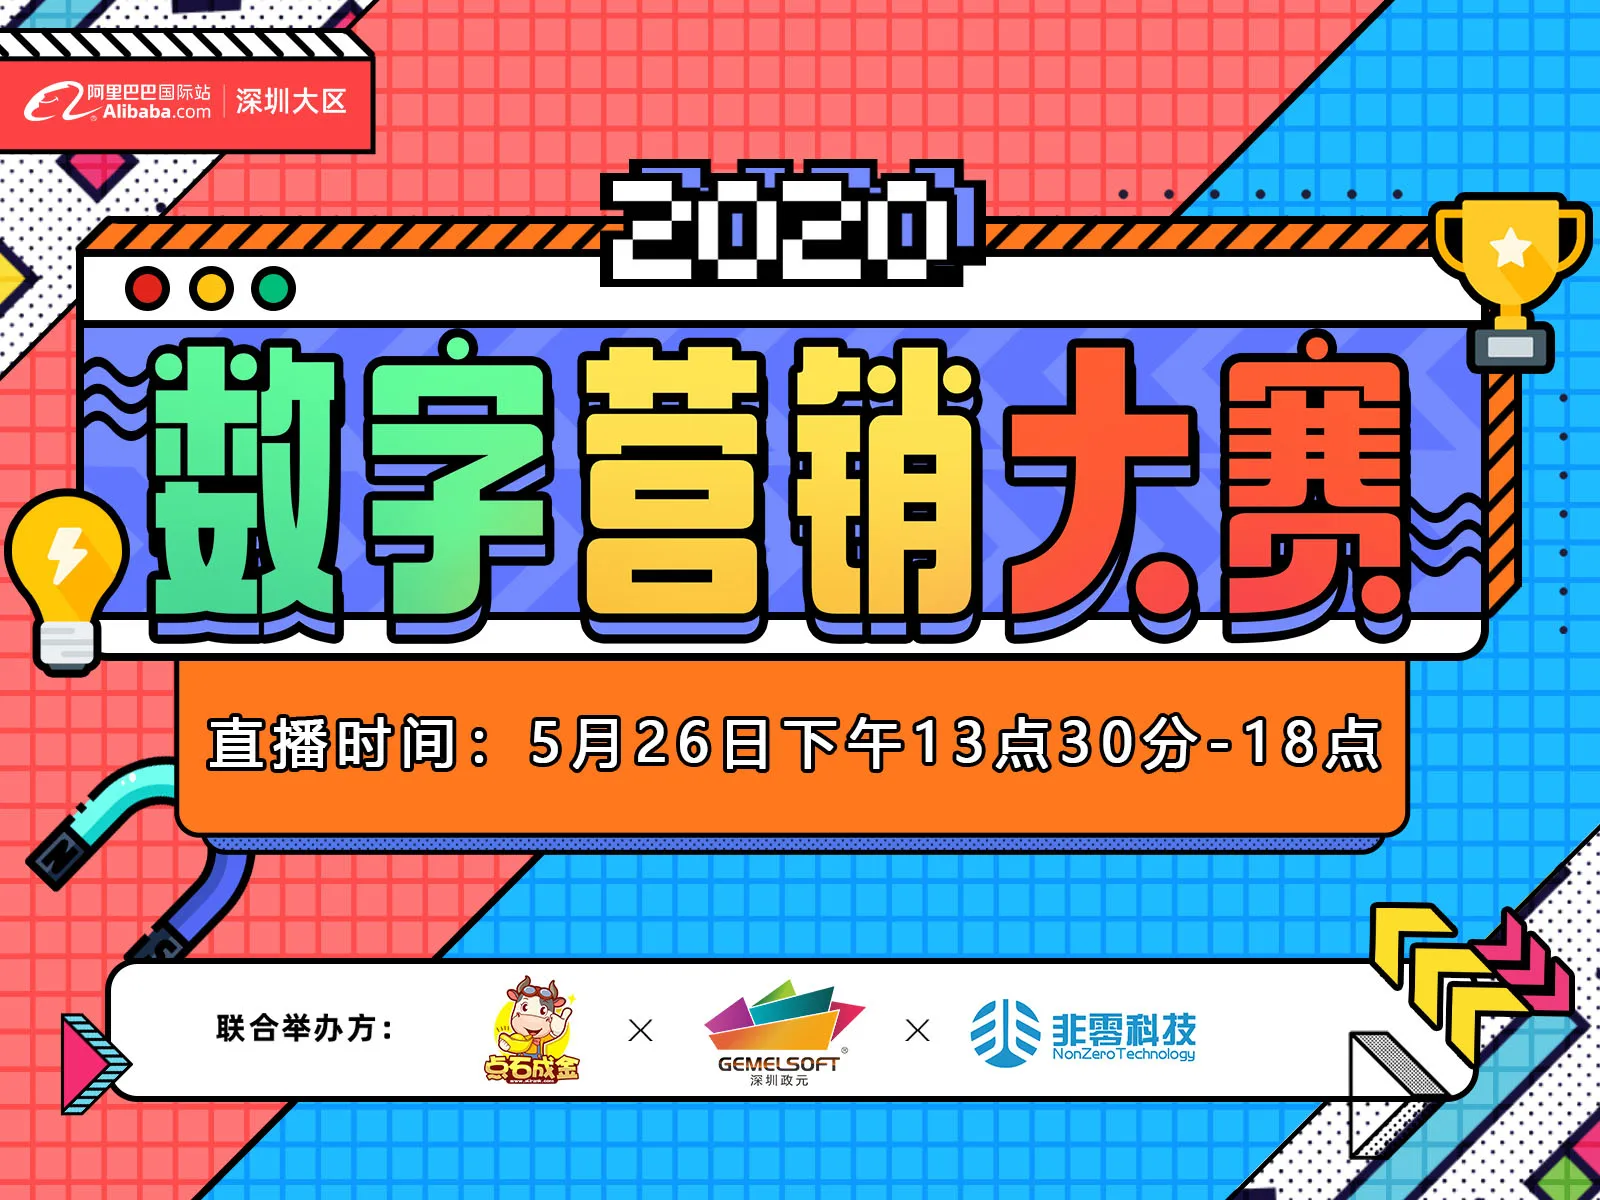 【2020数字营销大赛】深圳大区 宝安区域决赛